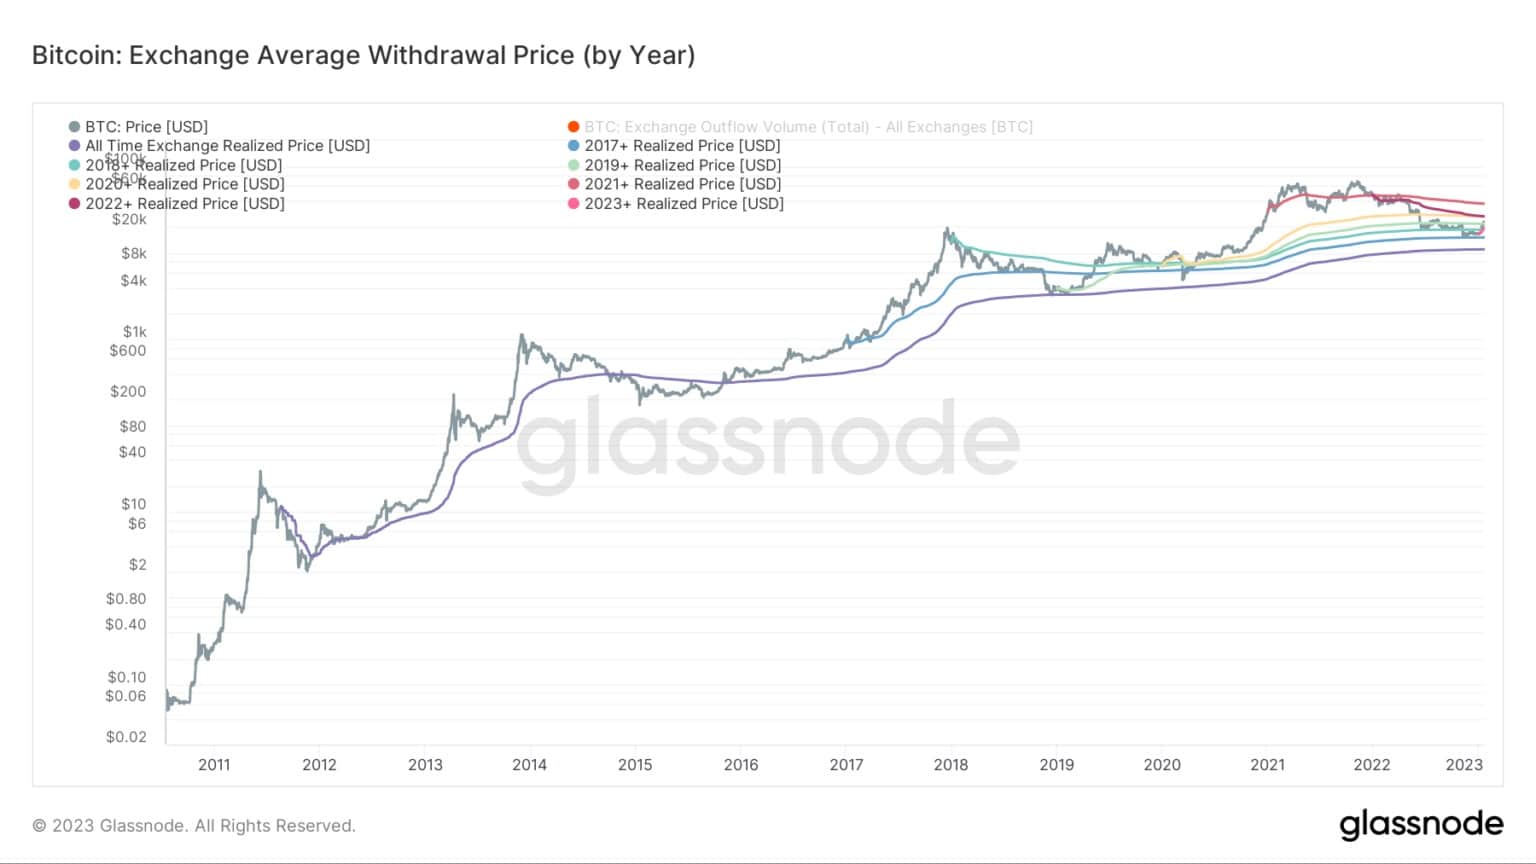 Wykres przedstawiający giełdową średnią cenę wycofania Bitcoina w poszczególnych latach (Źródło: Glassnode)